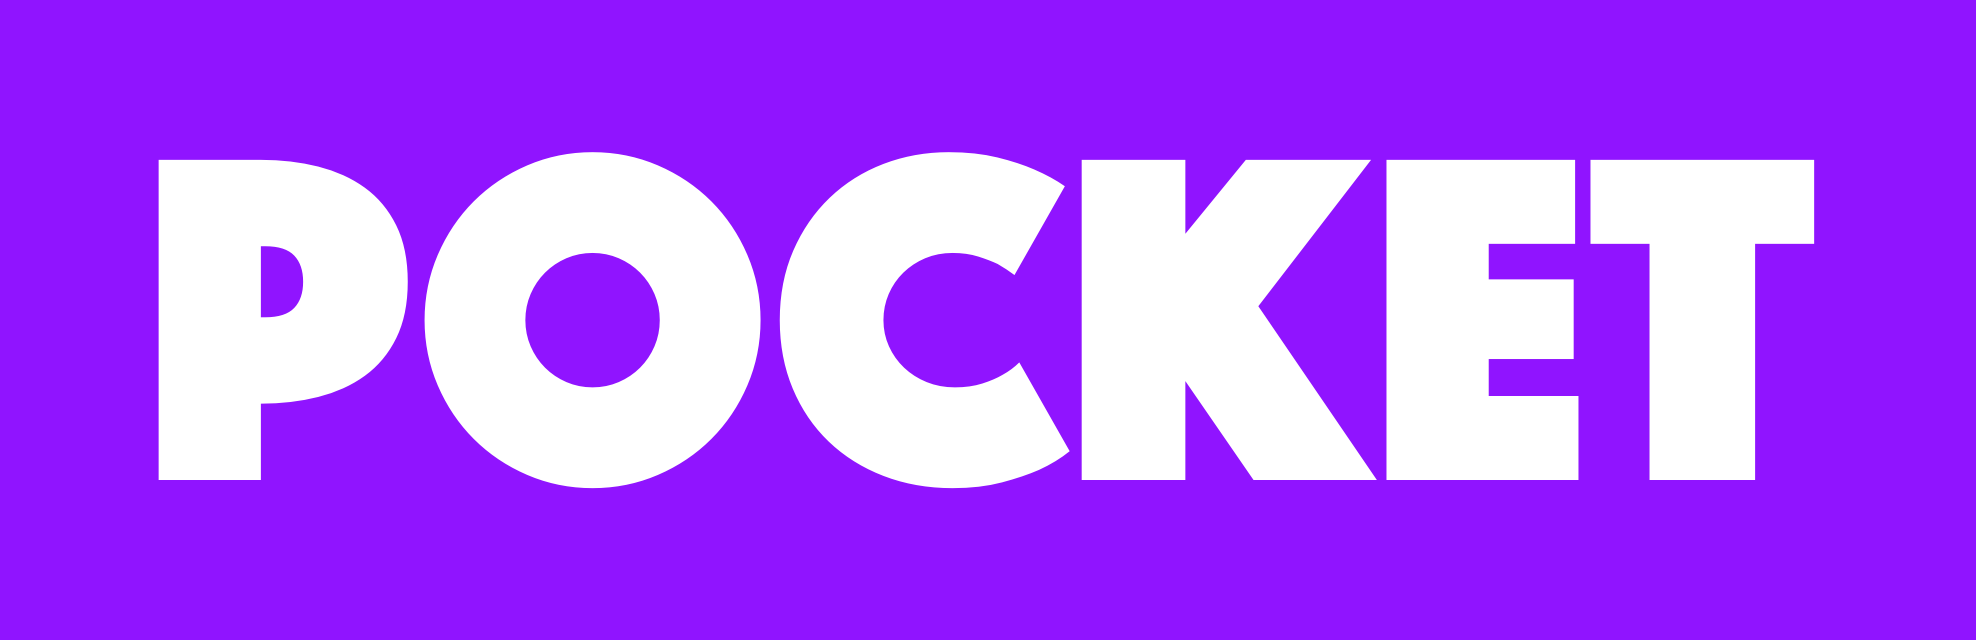 PocketBitcoin Logo